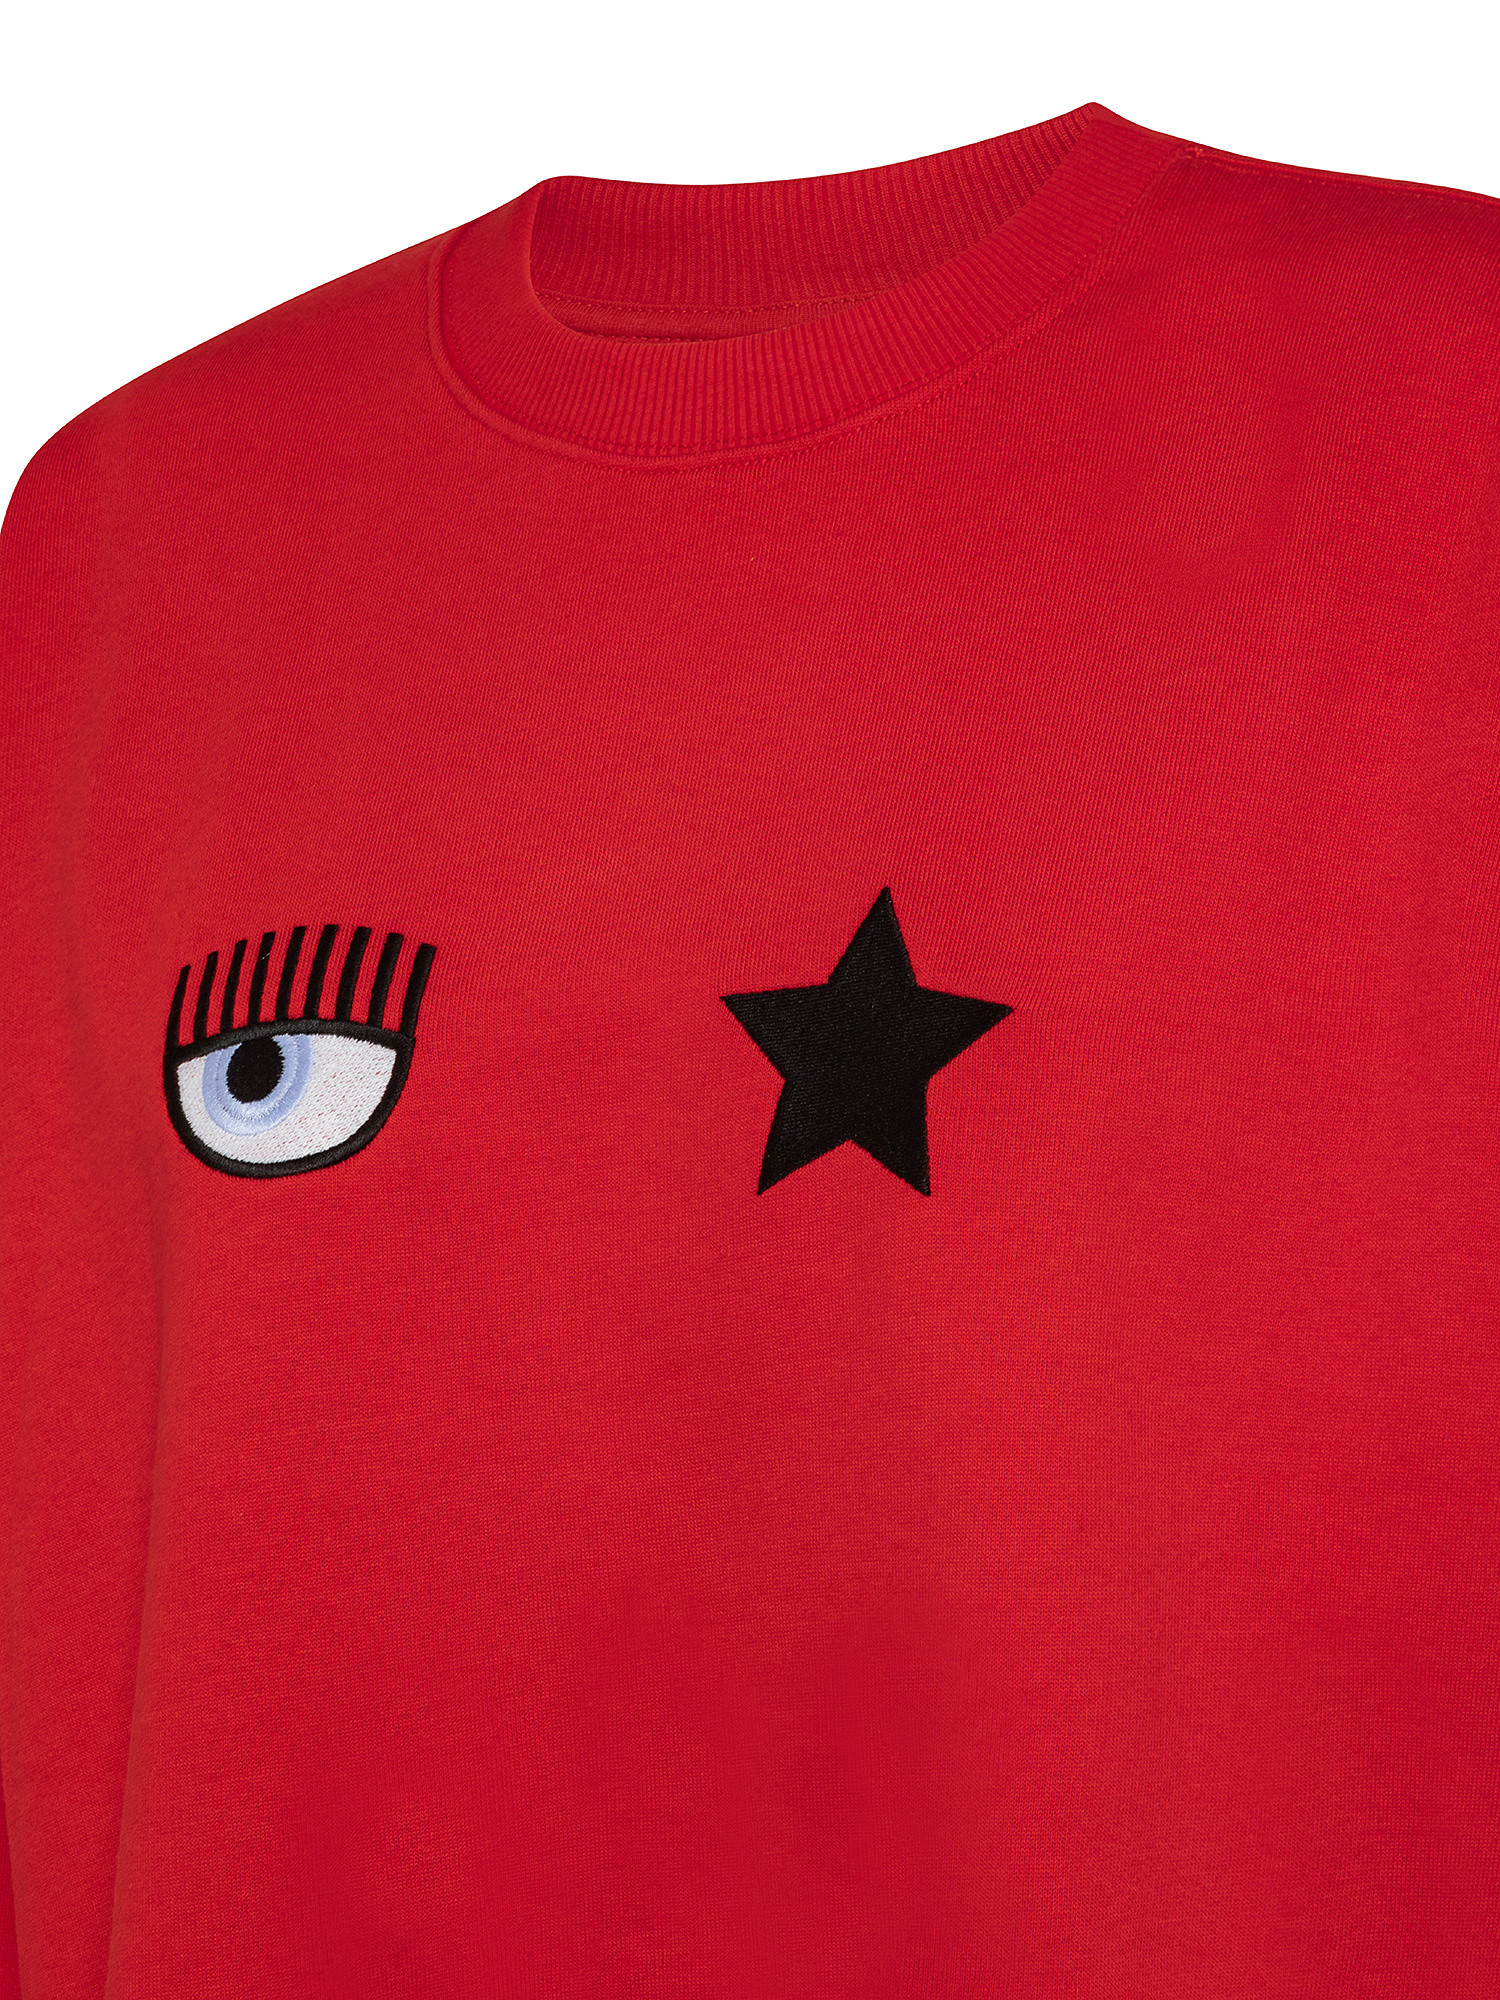 Eye Star sweatshirt, Red, large image number 2